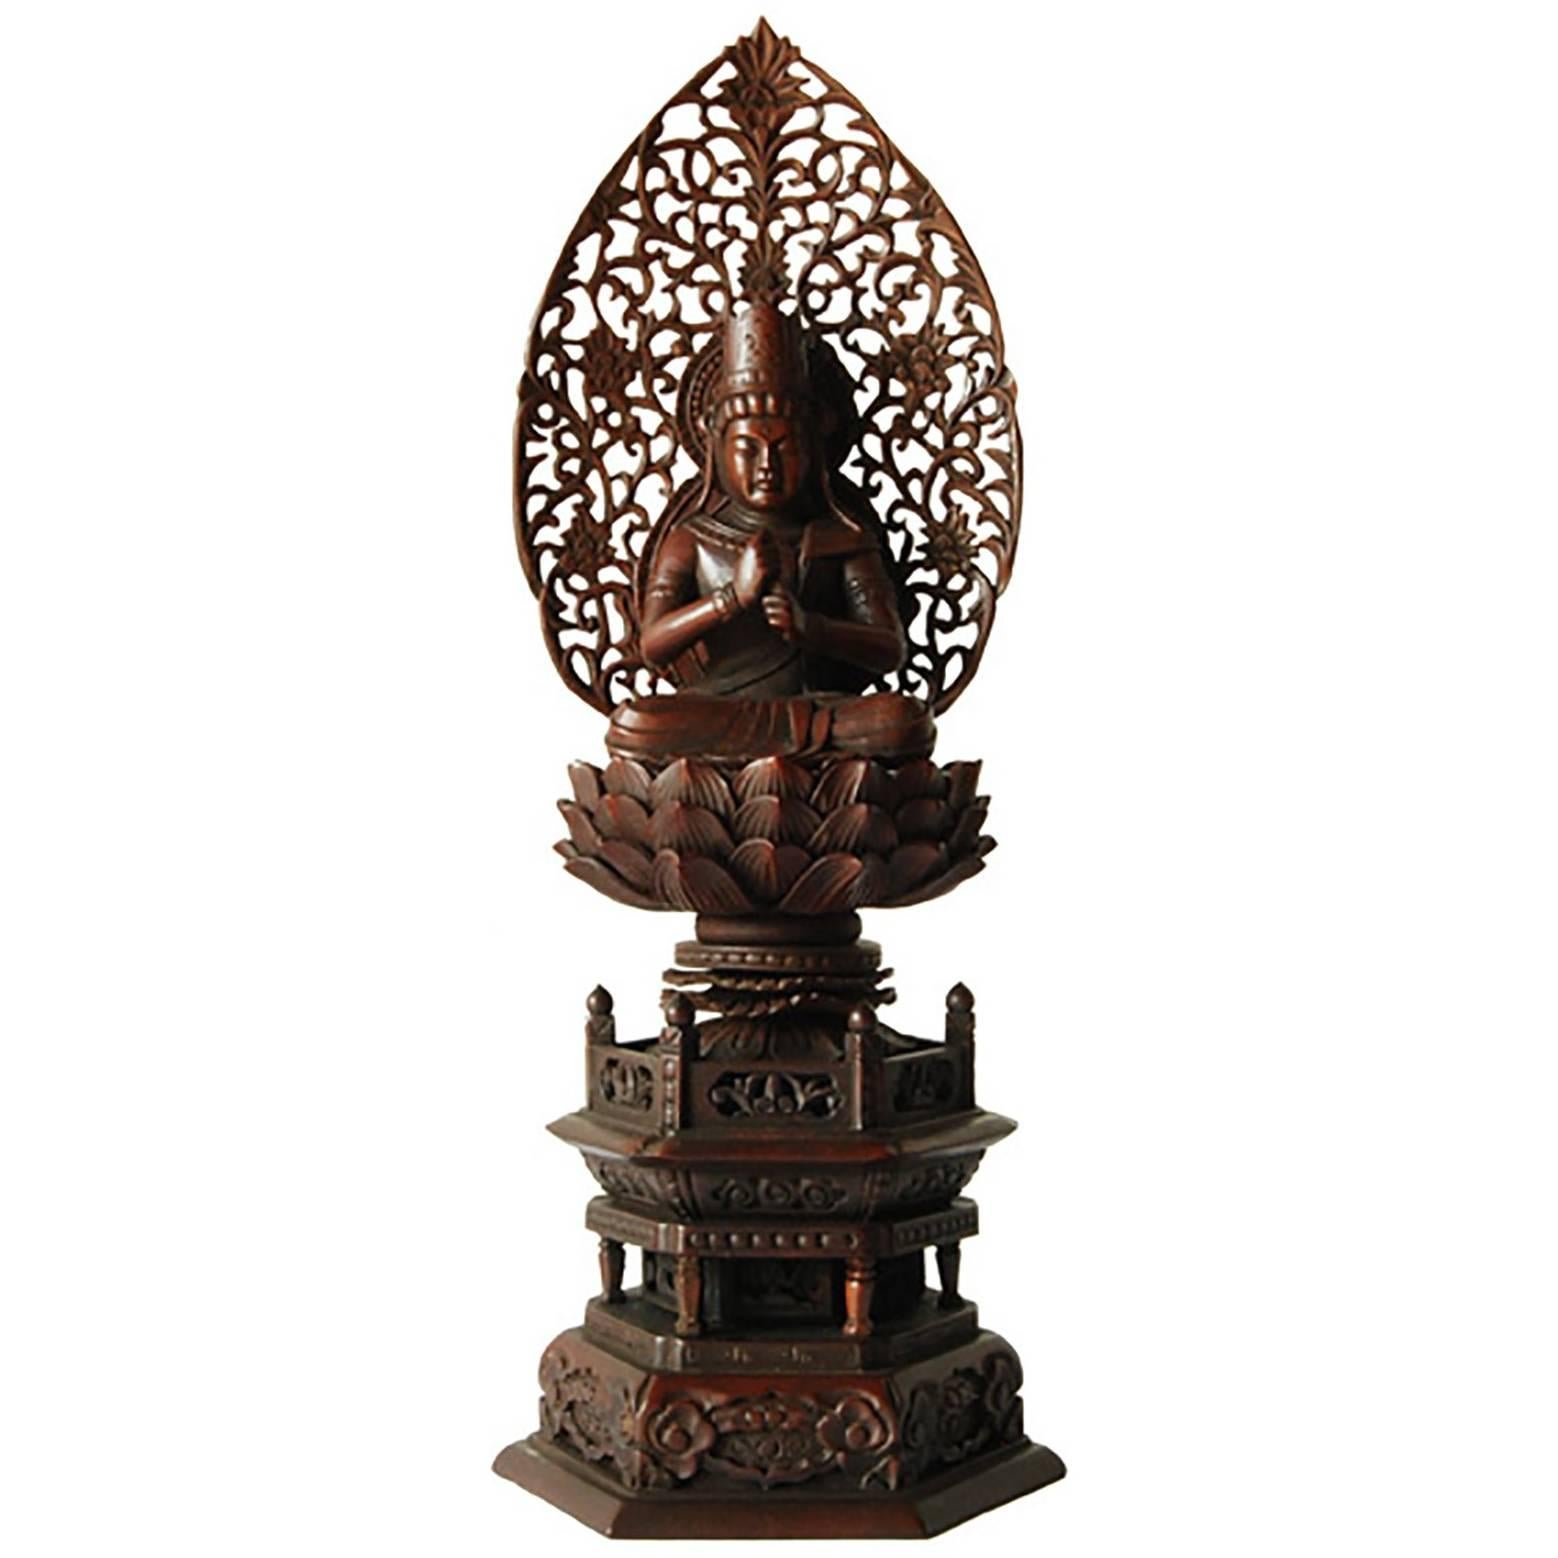 Japanese Guanyin on Lotus Throne